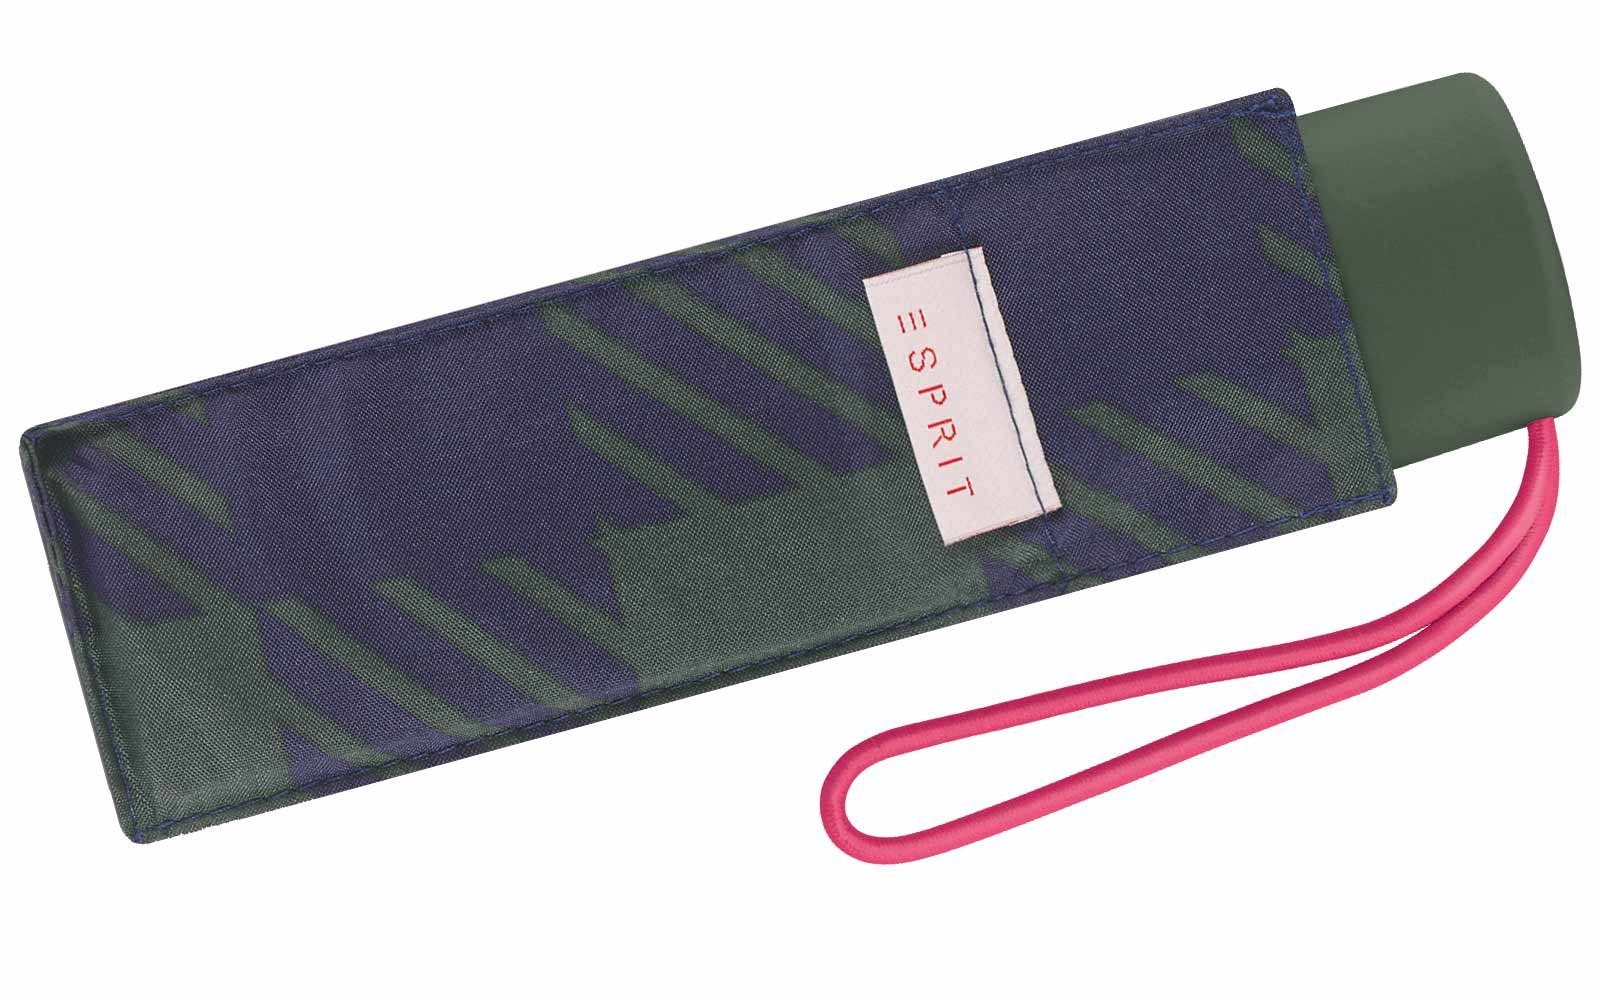 Esprit Taschenregenschirm kleiner, Farben für klassisches grün modischen in Schirm Damen, Design handlicher